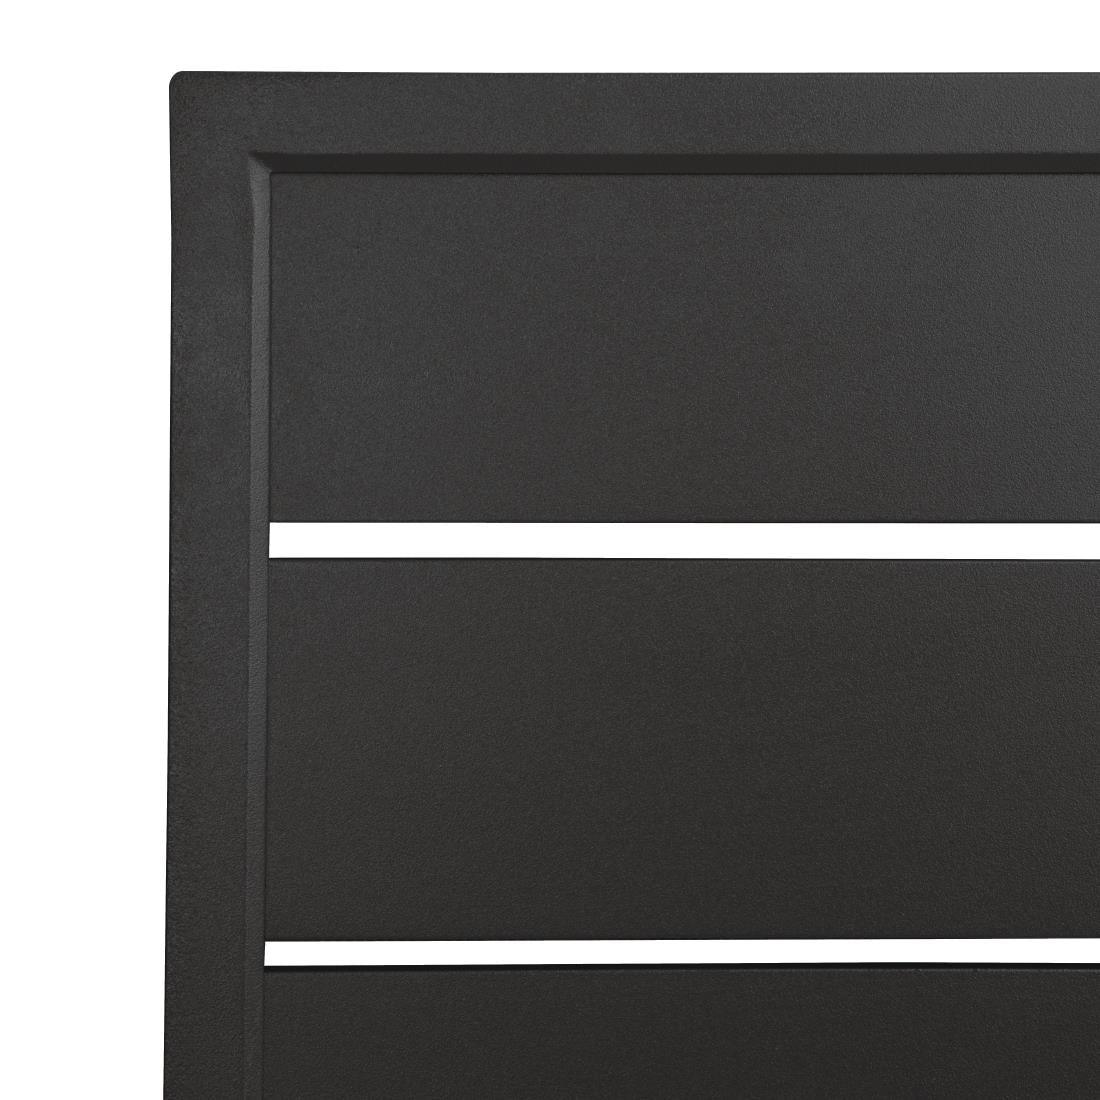 Bolero FW599 Bolero Black Aluminium Table Top Square - 700mm - HospoStore